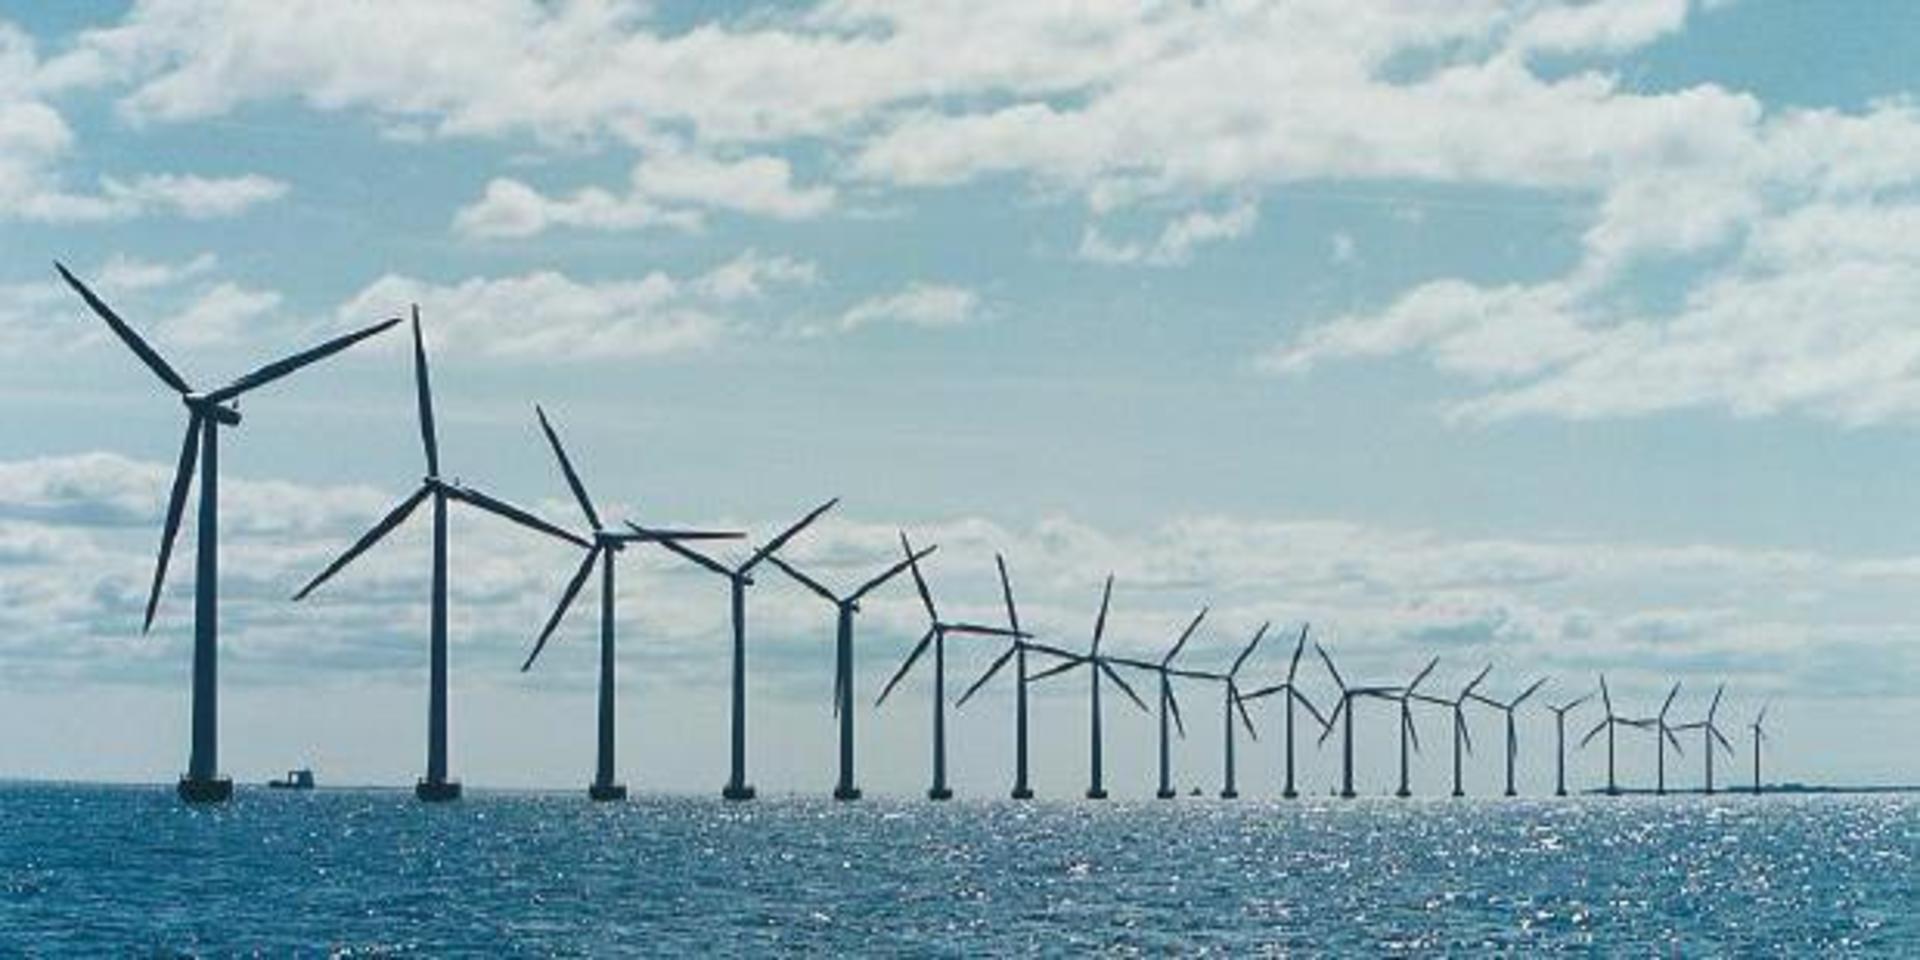 Zephyr Vind AB planerar att bygga en vindkraftspark till havs utanför Marstrand. 